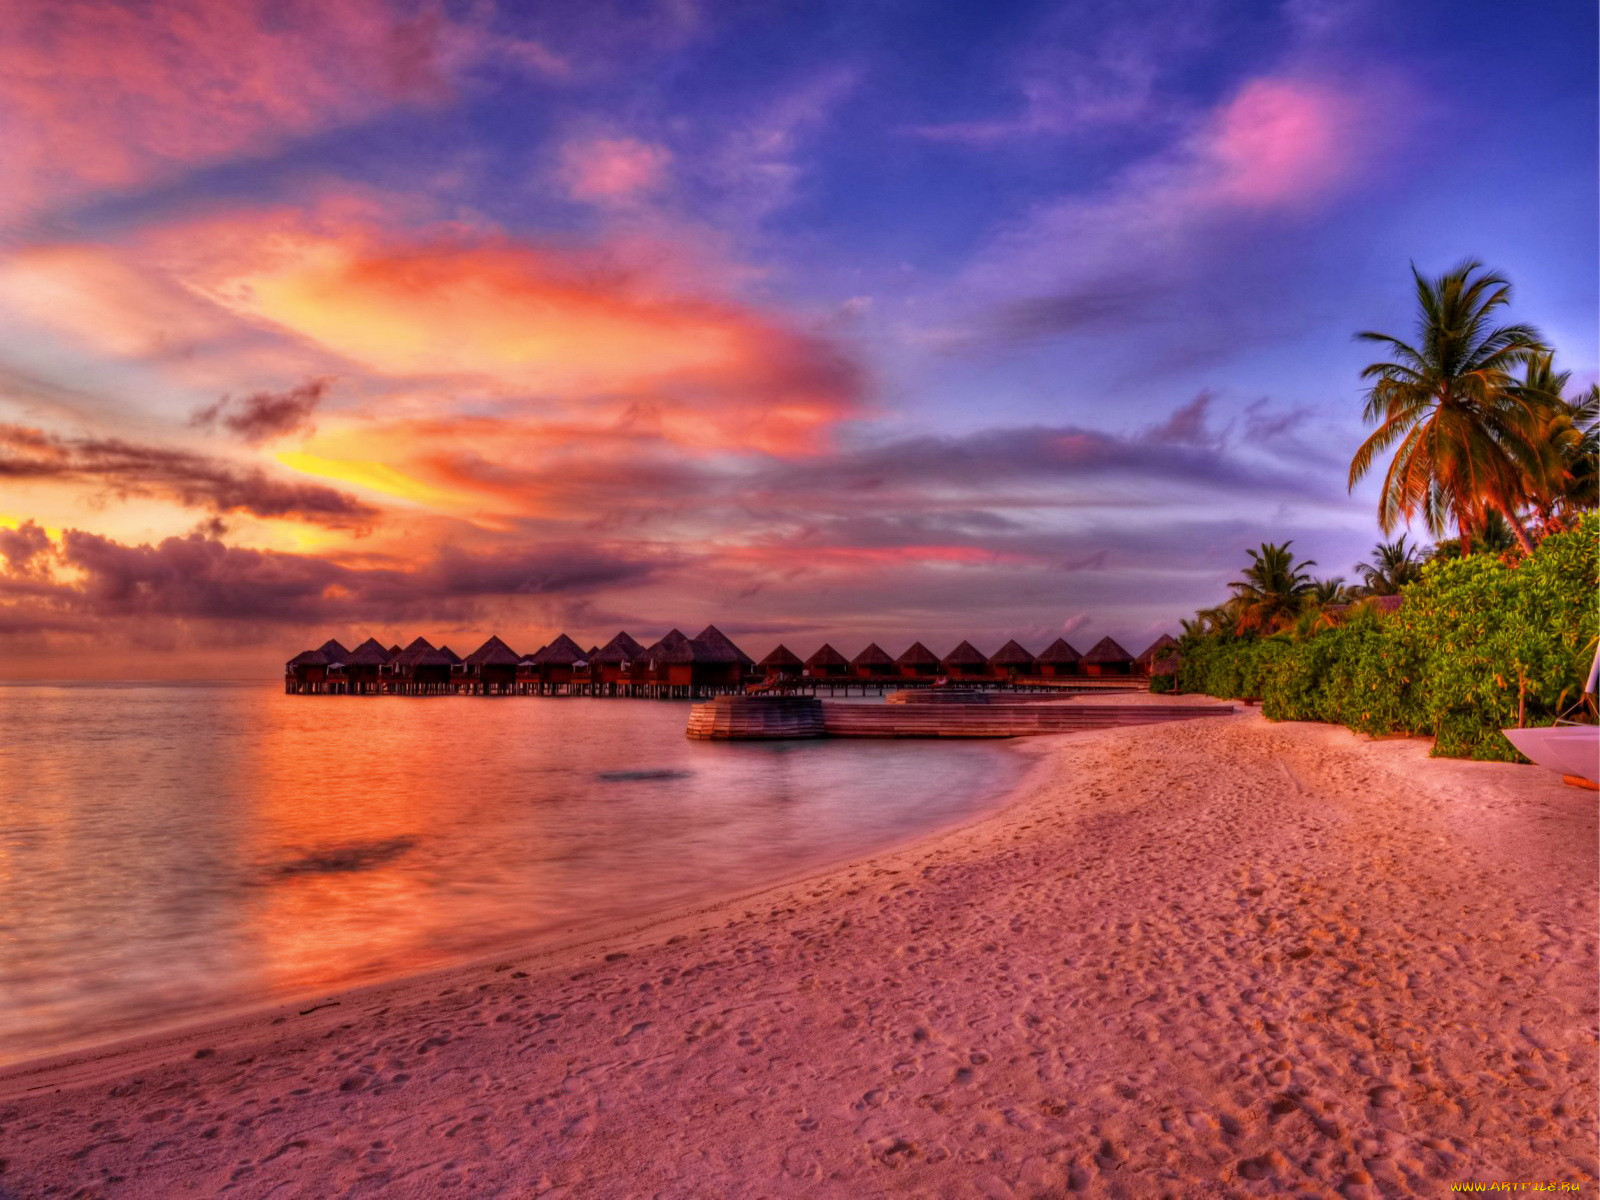 Обои Maldives-place for romantics Природа Тропики, обои для рабочего стола,  фотографии maldives, place, for, romantics, природа, тропики, океан, пляж,  пальмы, бунгало, мальдивы Обои для рабочего стола, скачать обои картинки  заставки на рабочий